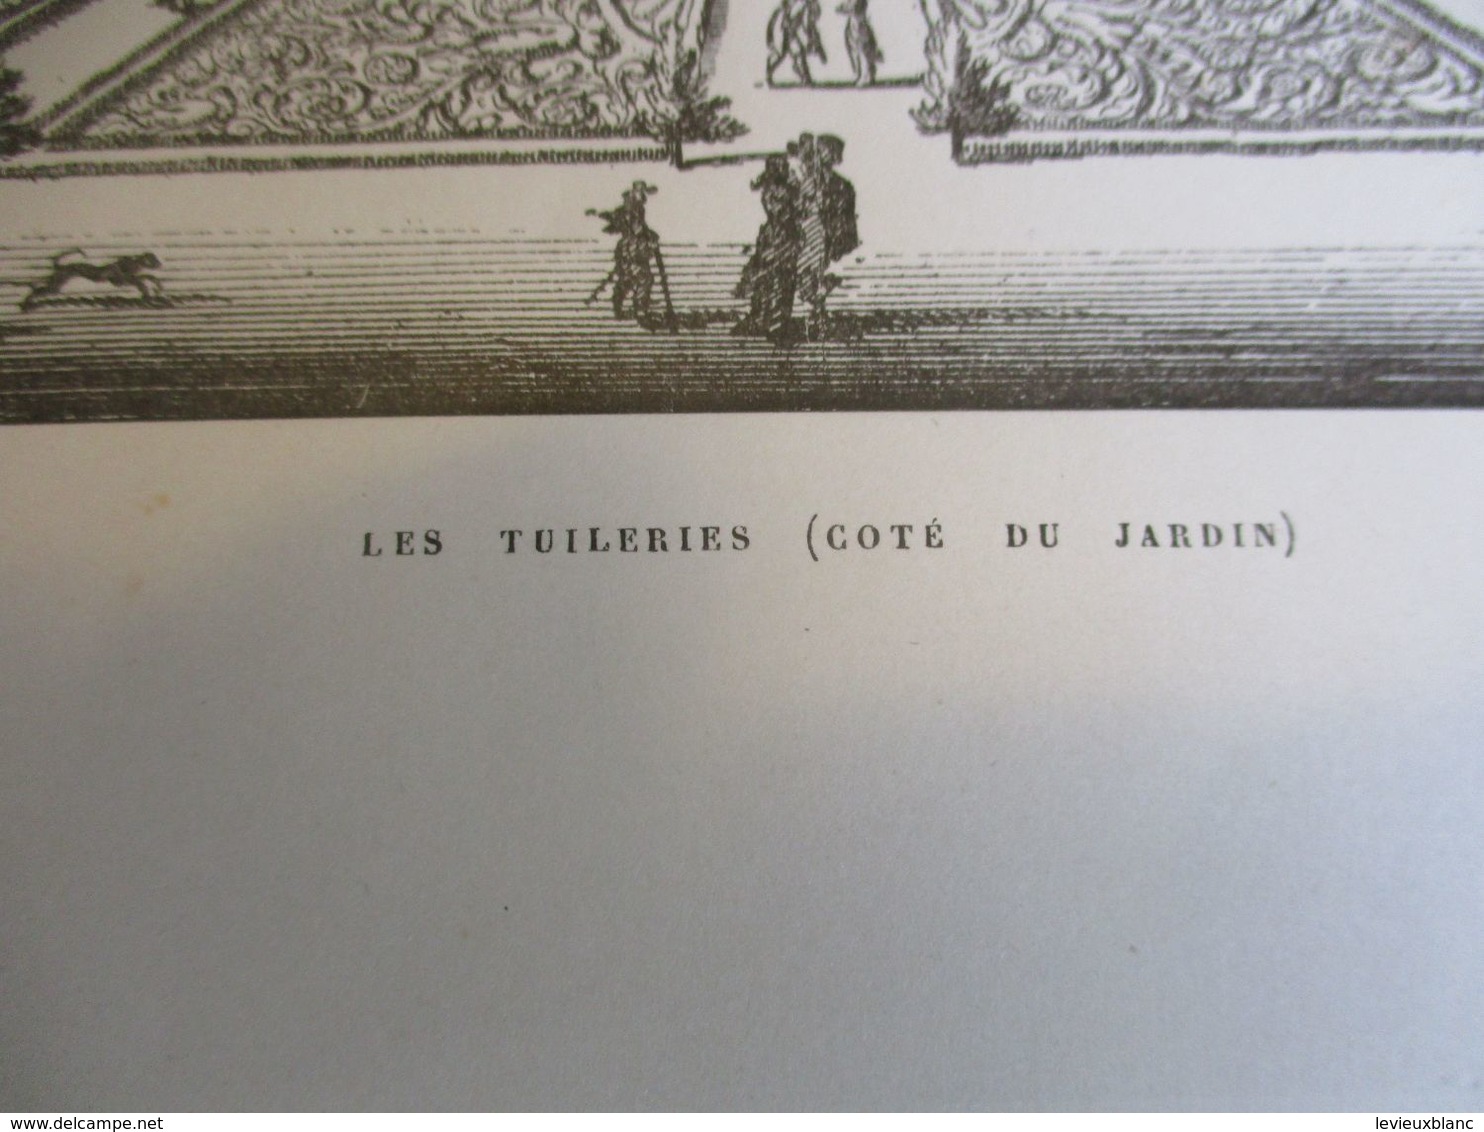 Grande Gravure Les Tuileries ( Côté Du Jardin) /PARIS Sous LOUIS XIV/Monuments Et Vues/A Maquet/1883 GRAV376 - Estampes & Gravures